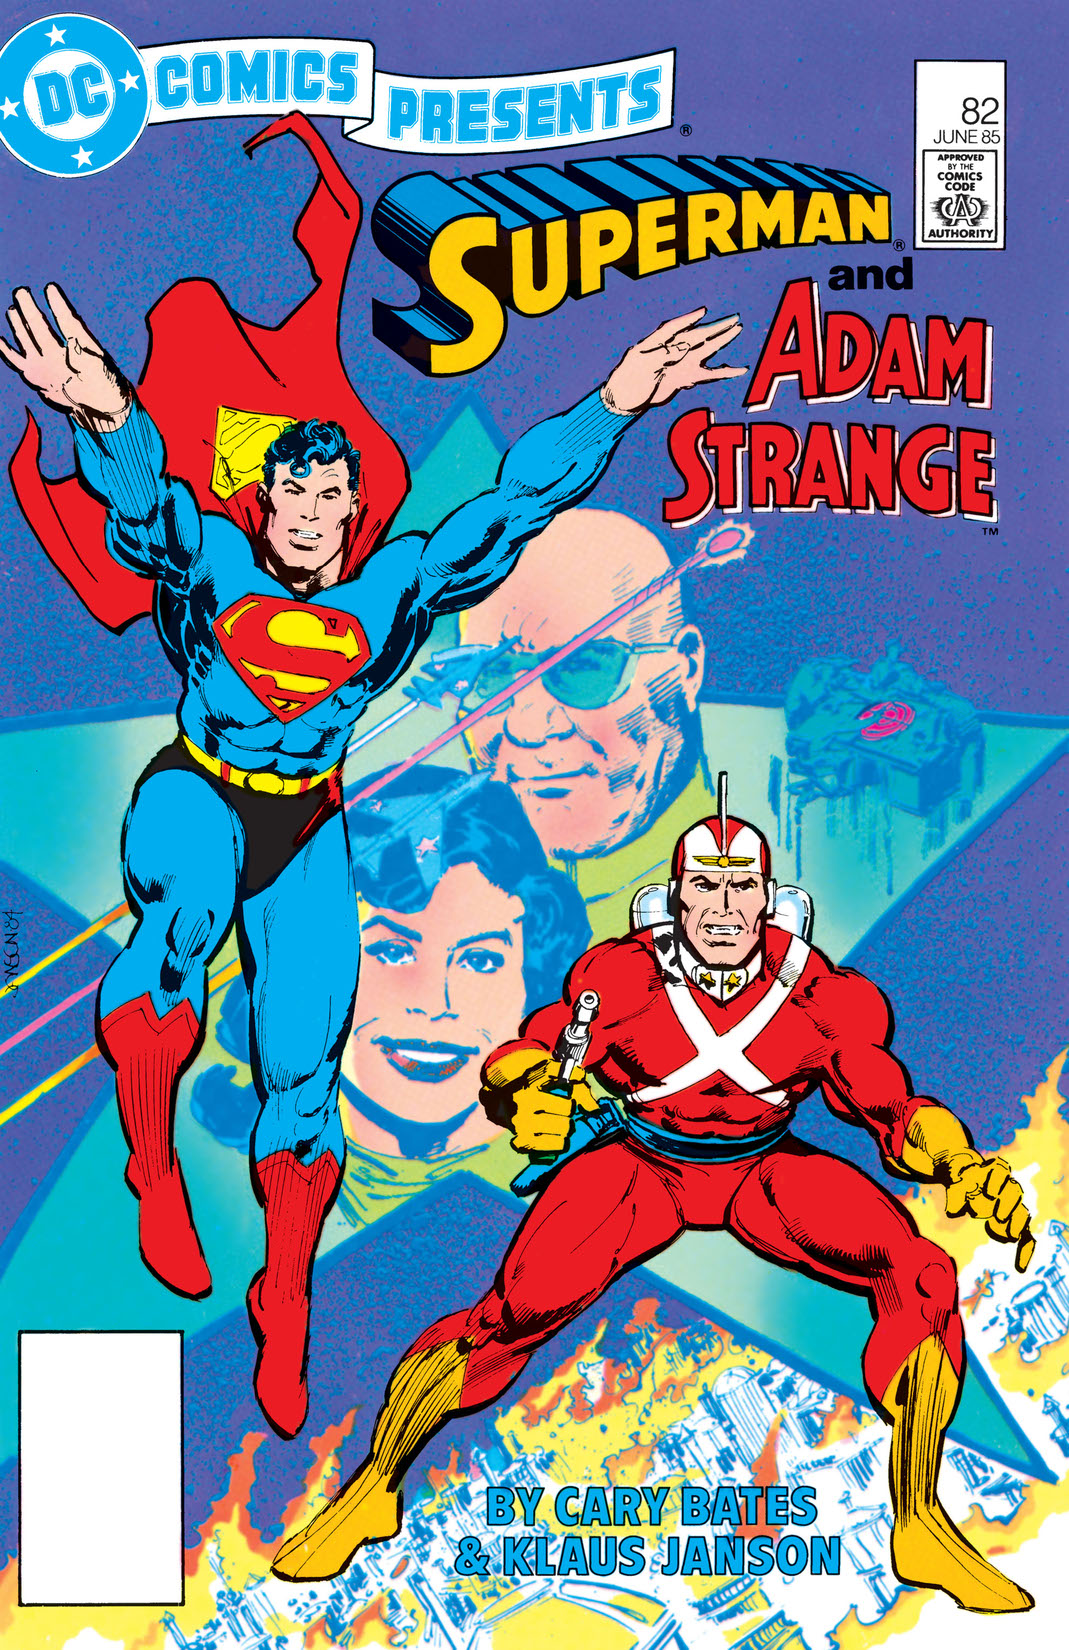 DC Comics Presents (1978-1986) #82 preview images